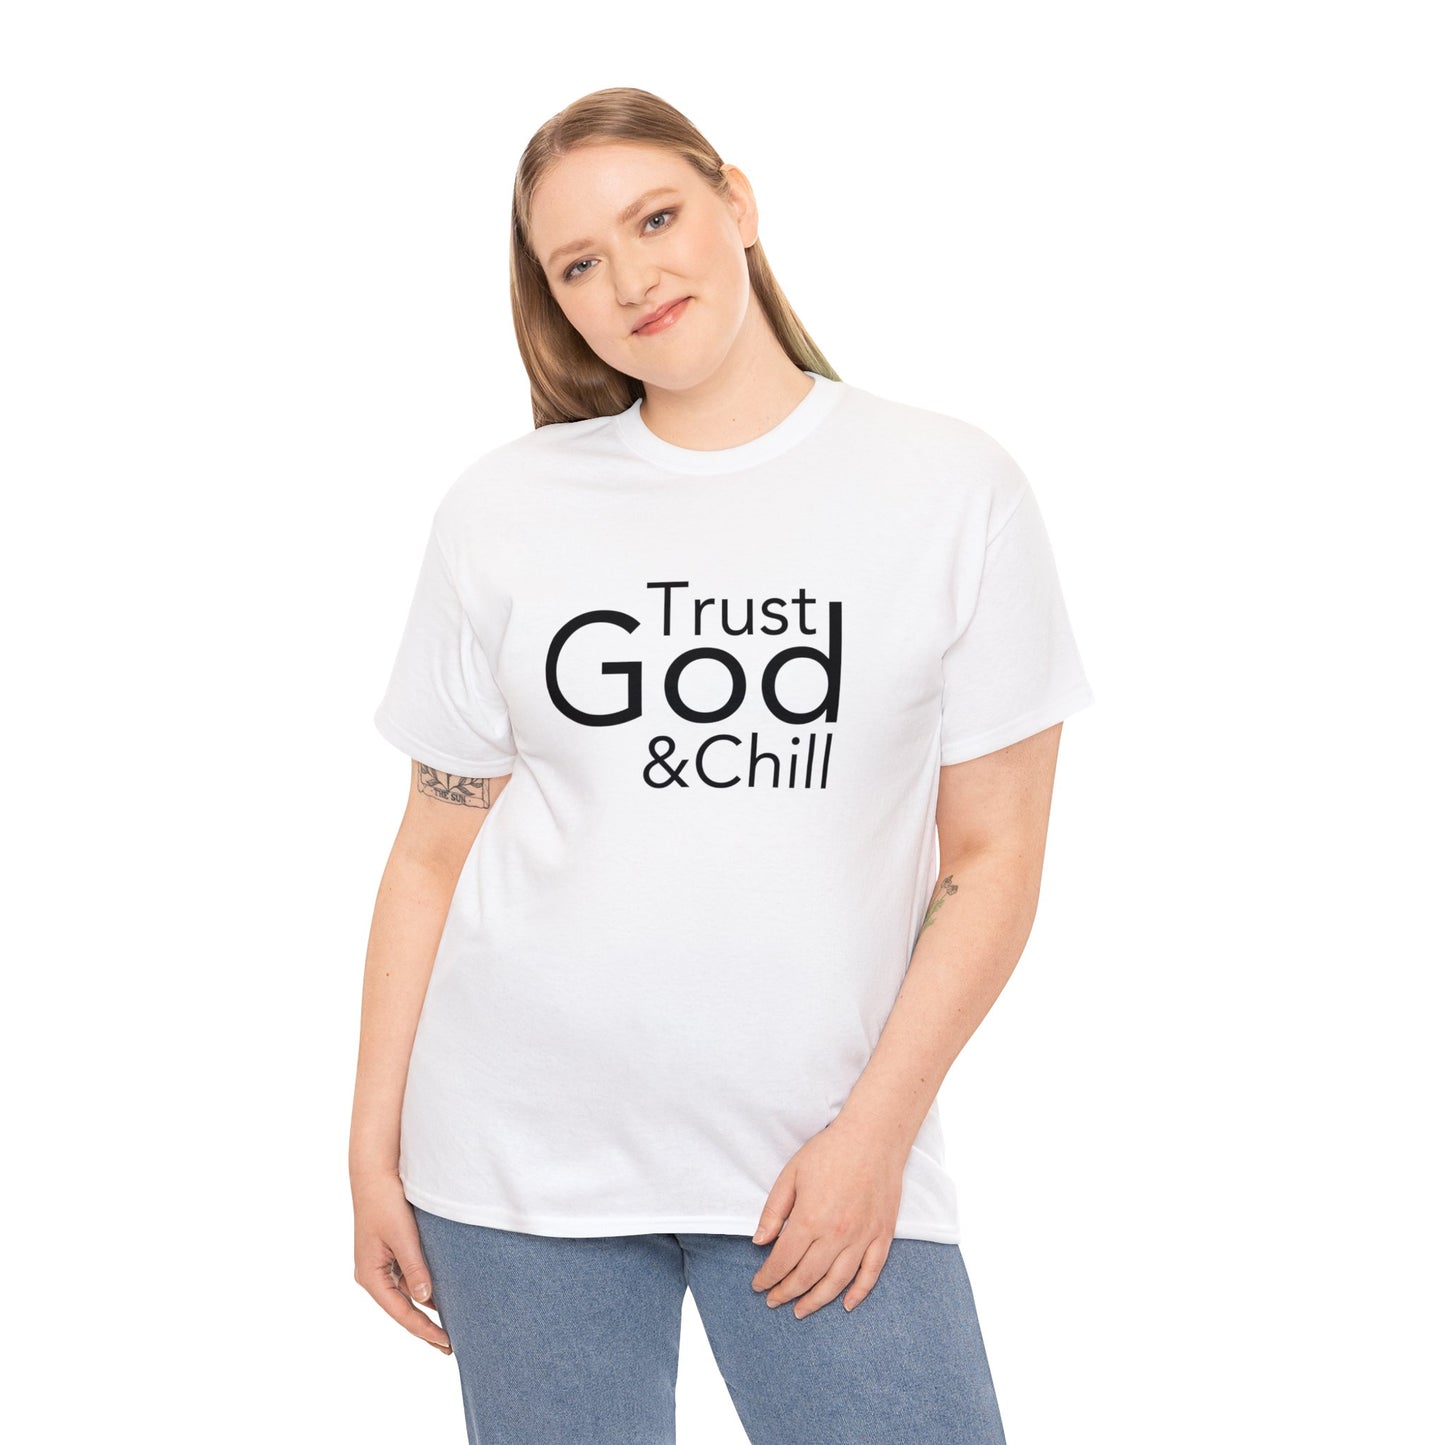 Trust God & Chill Tee - Black